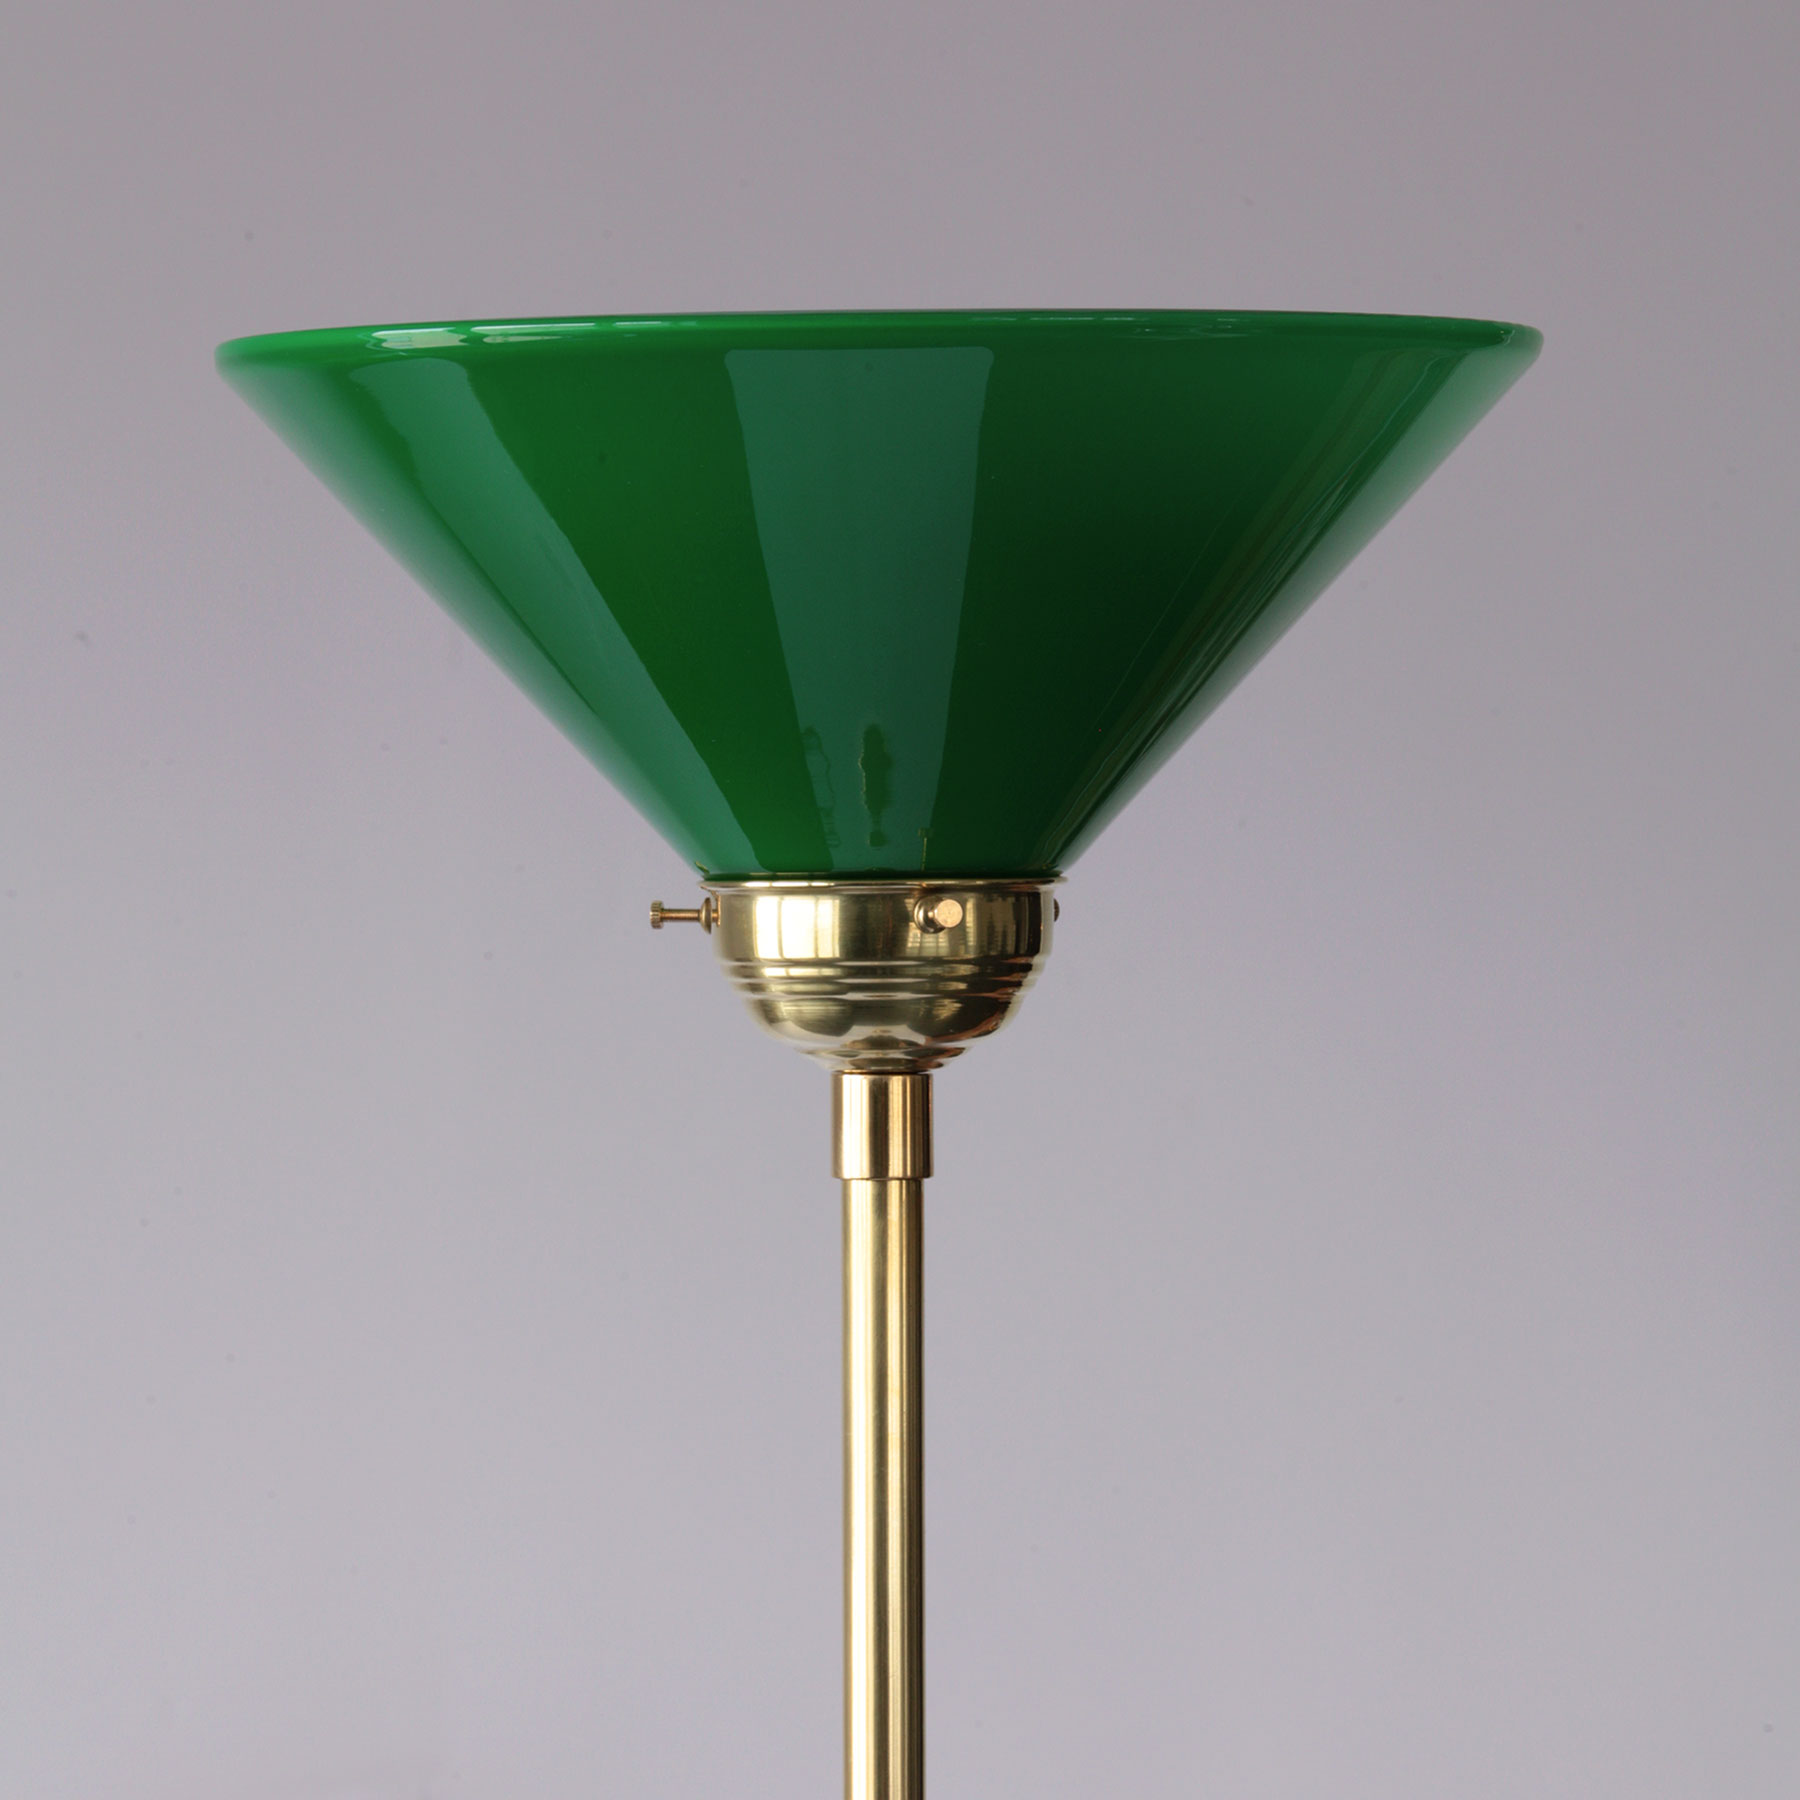 Art Nouveau Ceiling Floodlight with Cone Shaped Glass Shade: Messing poliert, unlackiert, mit grünem Kegel-Glasschirm